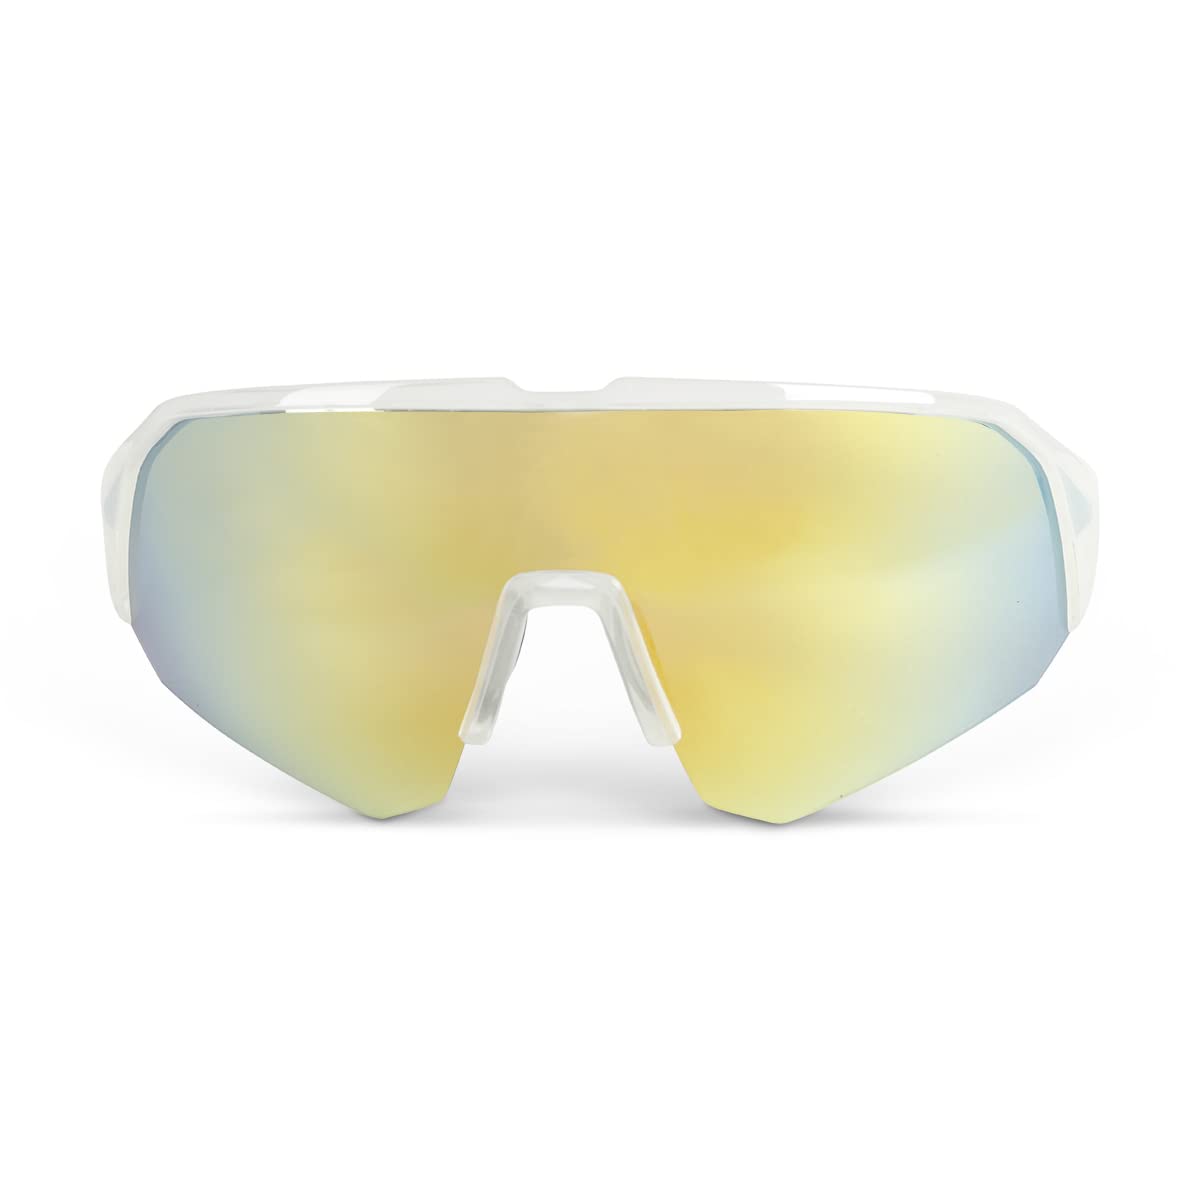 509 Shags Polarized Sunglasses